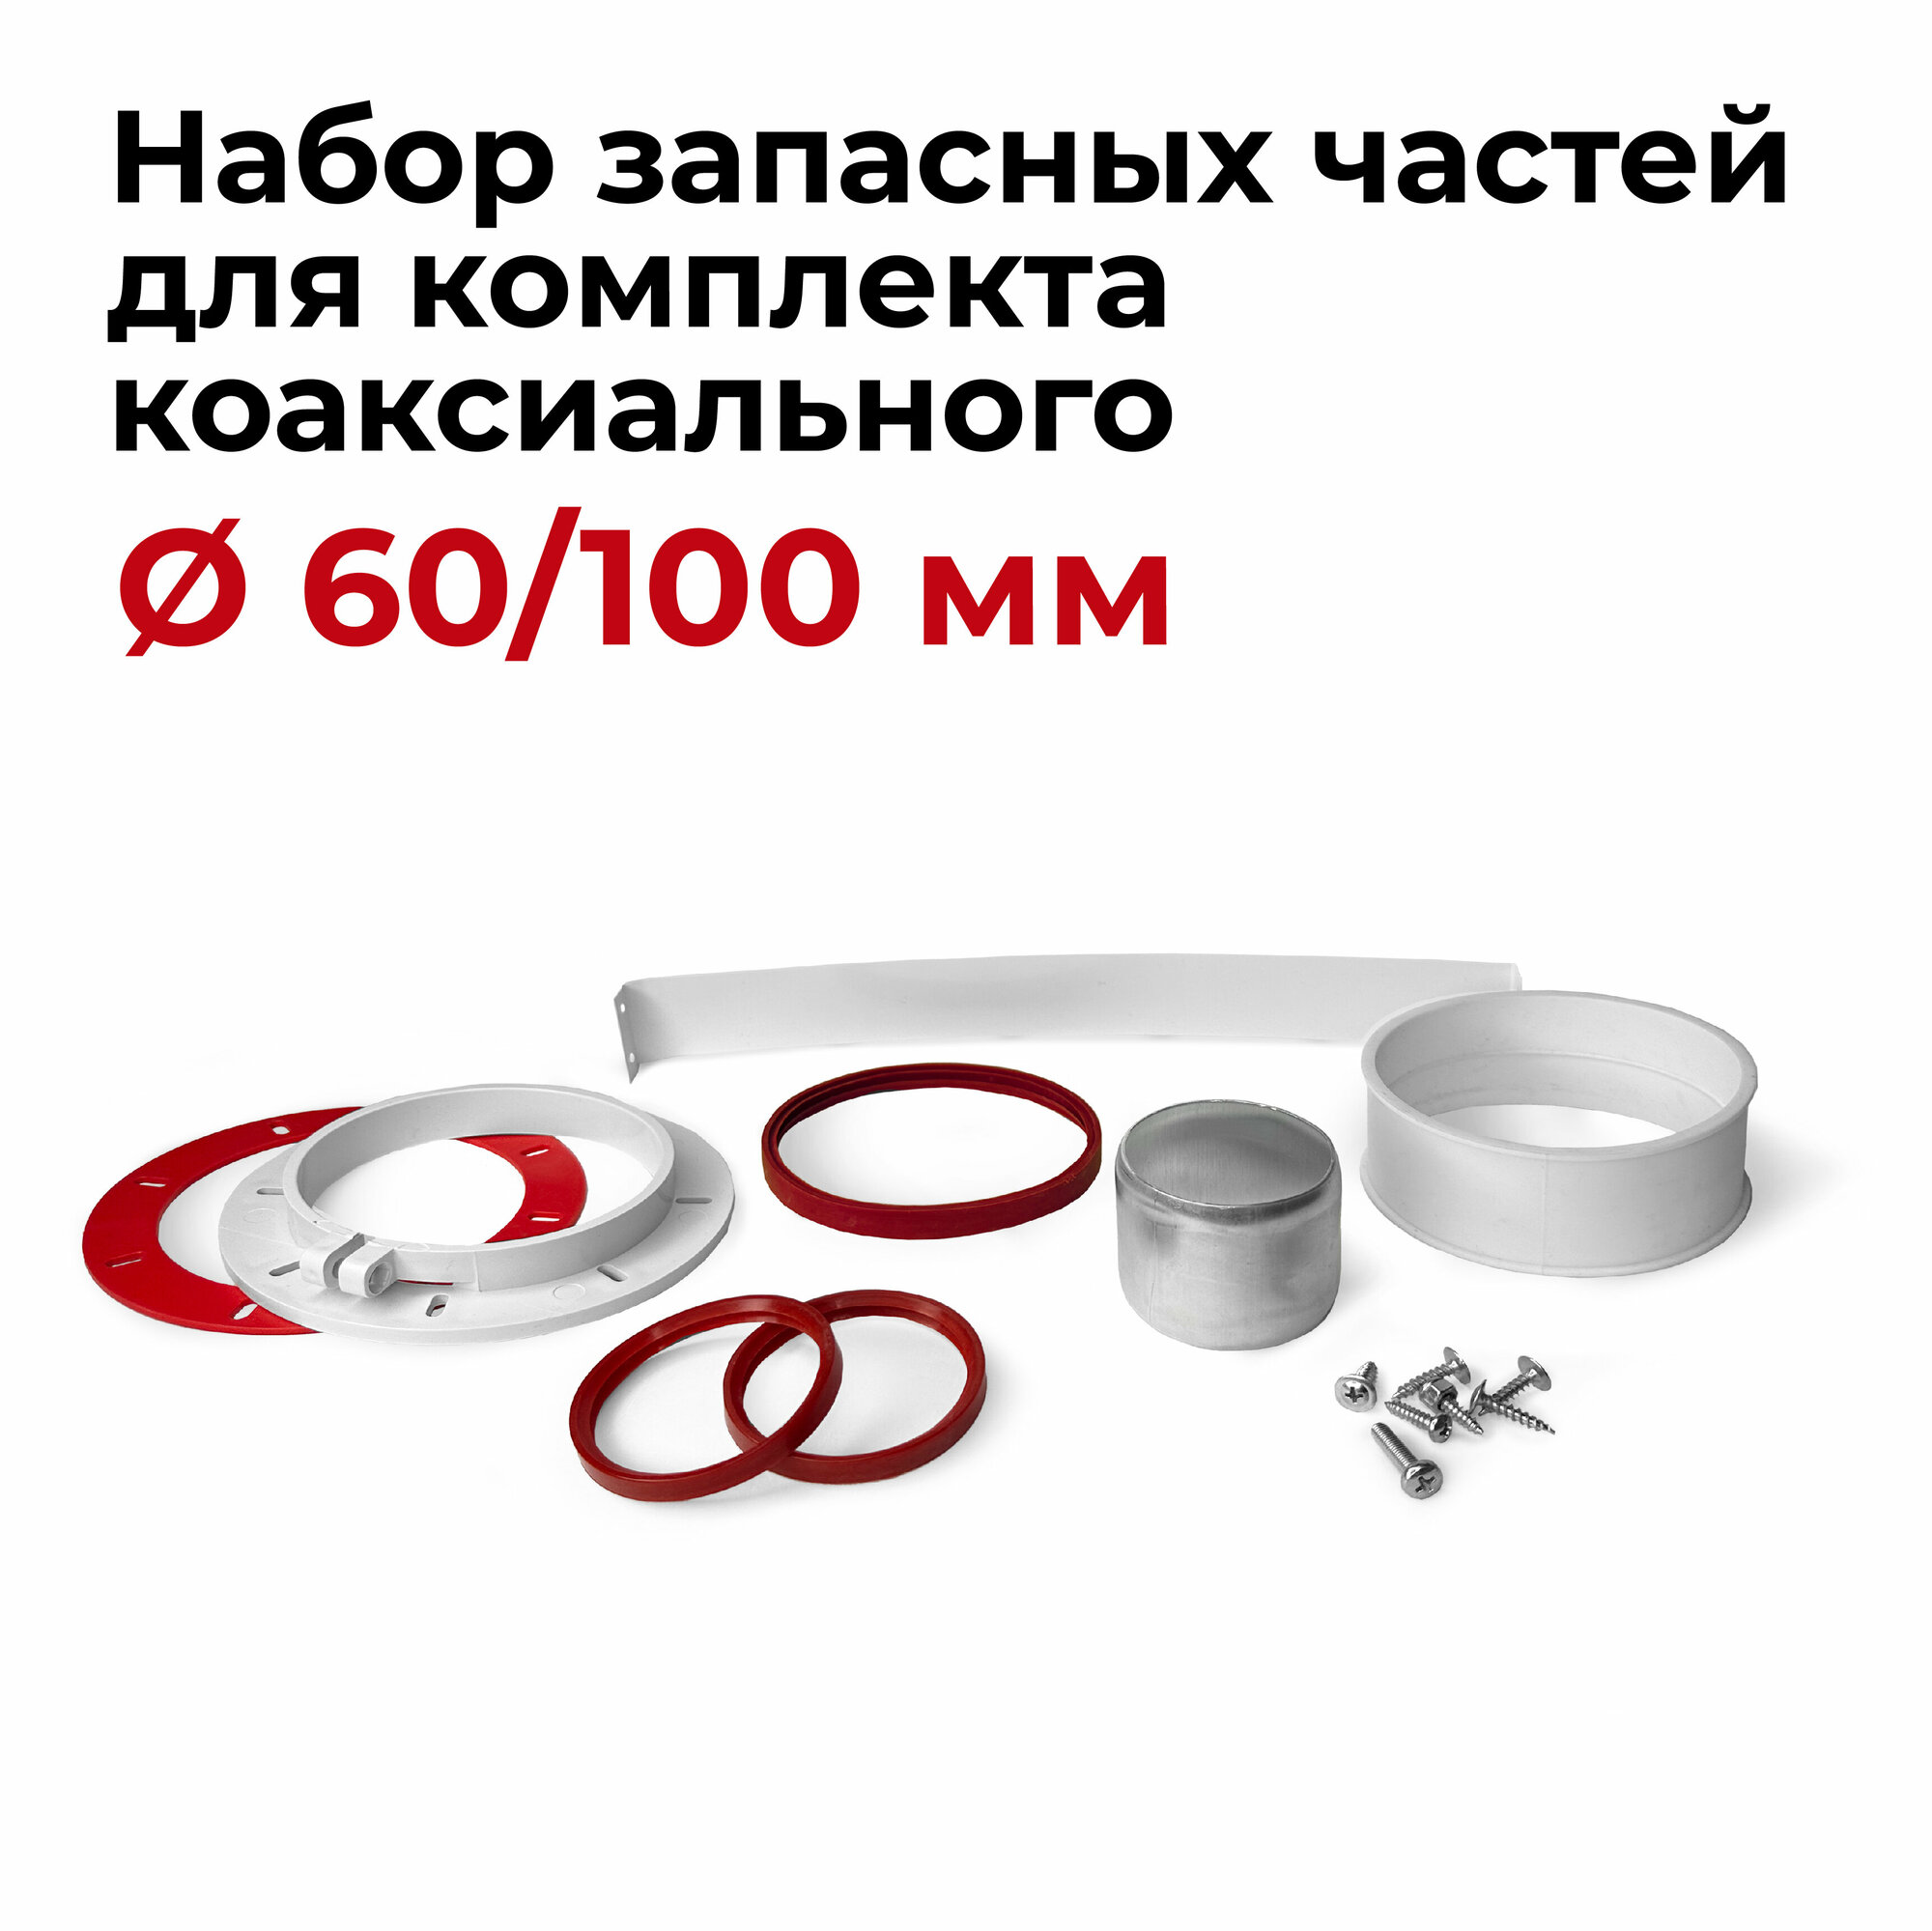 Набор запасных частей для комплекта коаксиального 60/100 мм "Прок" - фотография № 1